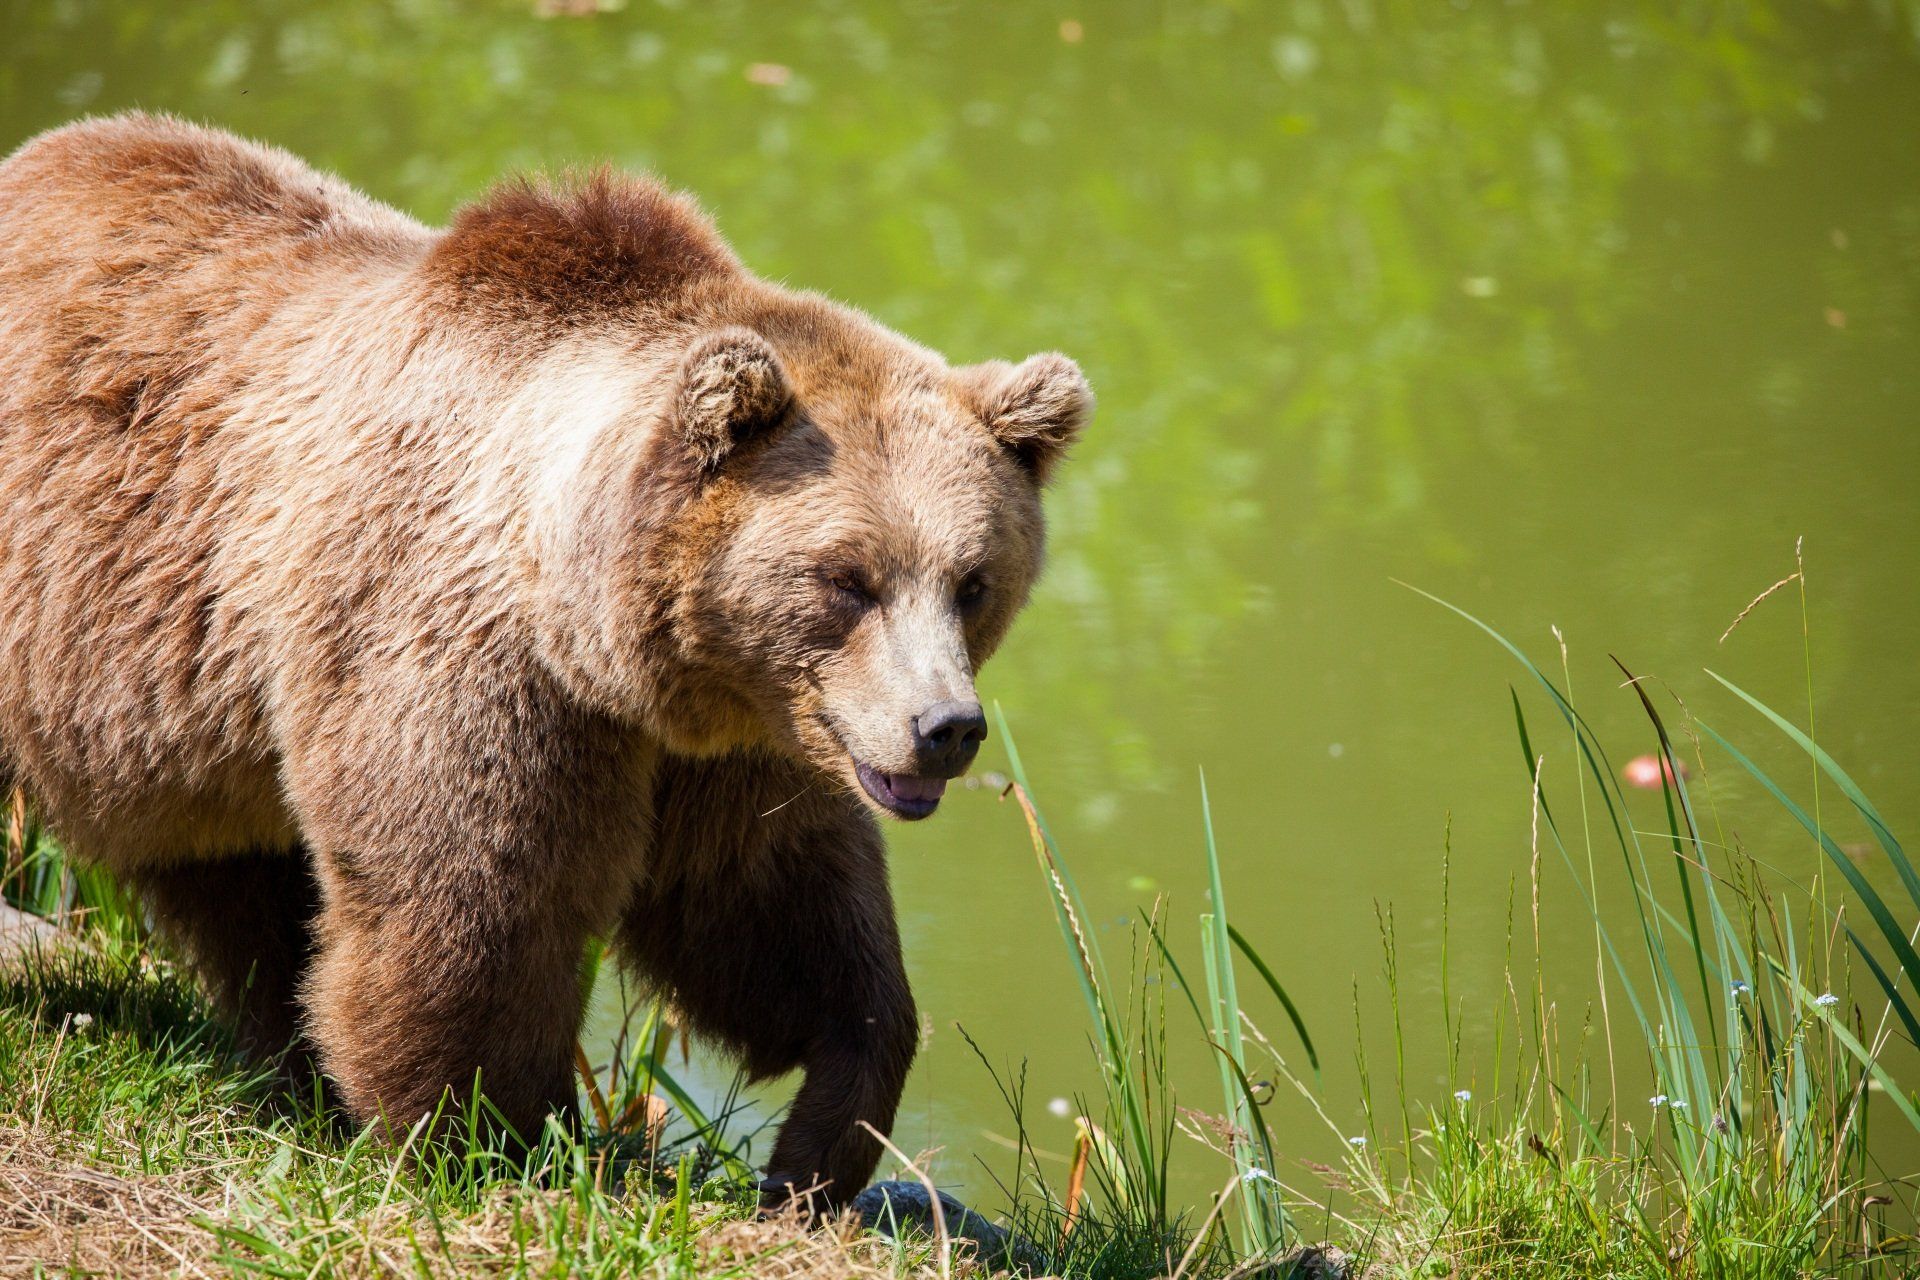 A brown bear is walking near a body of water.